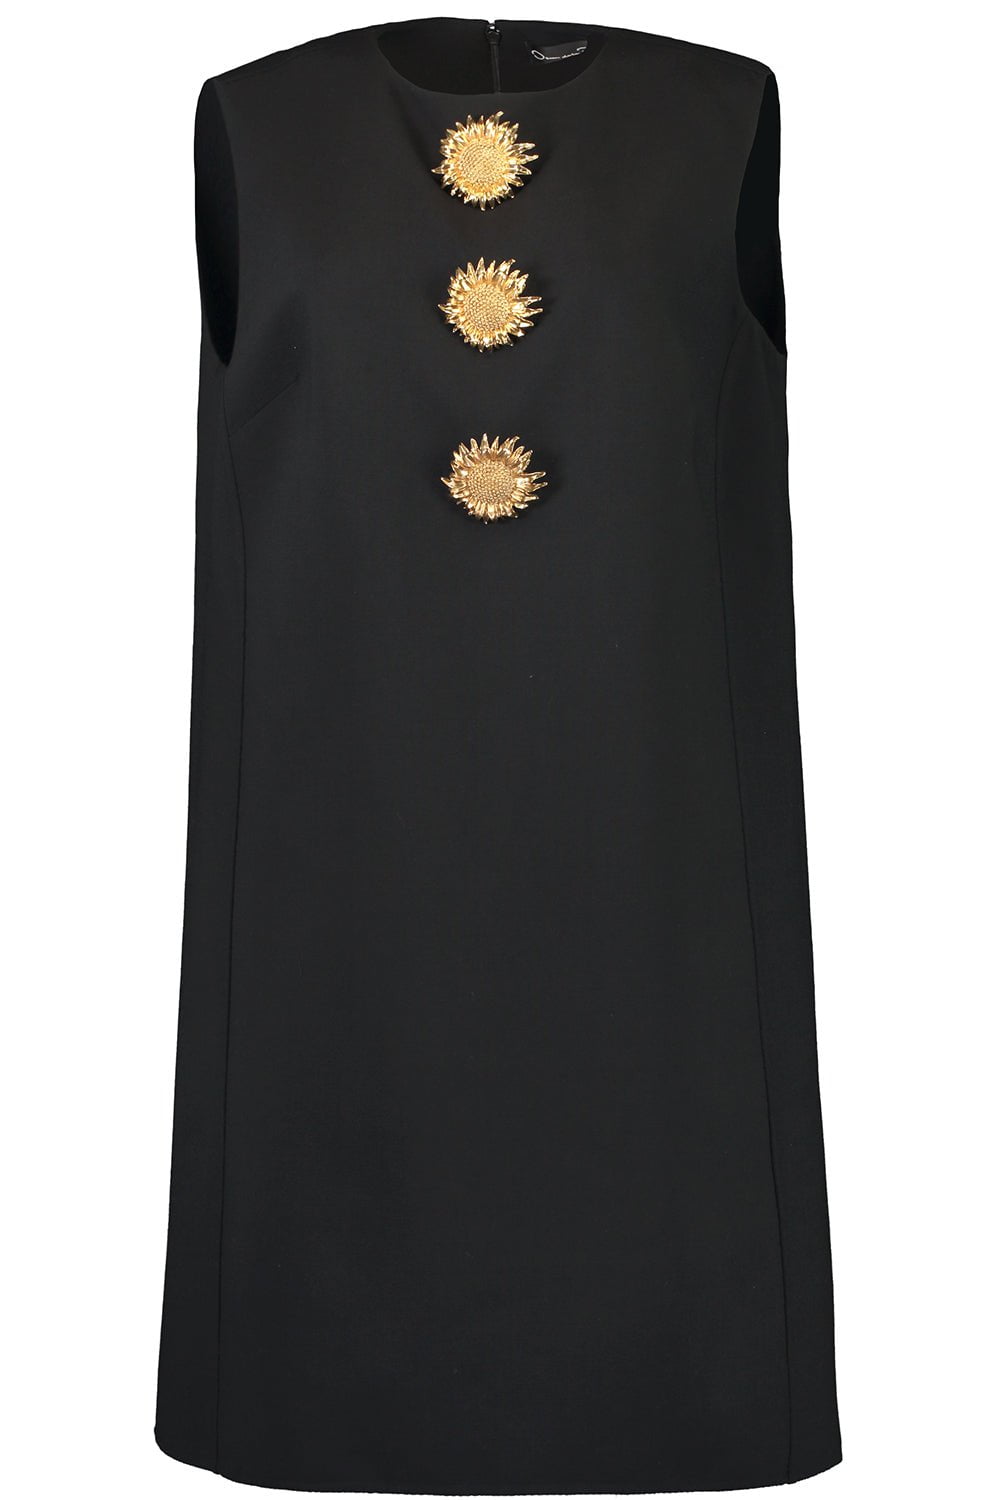 OSCAR DE LA RENTA-Sunflower Brooch Shift Dress-BLACK